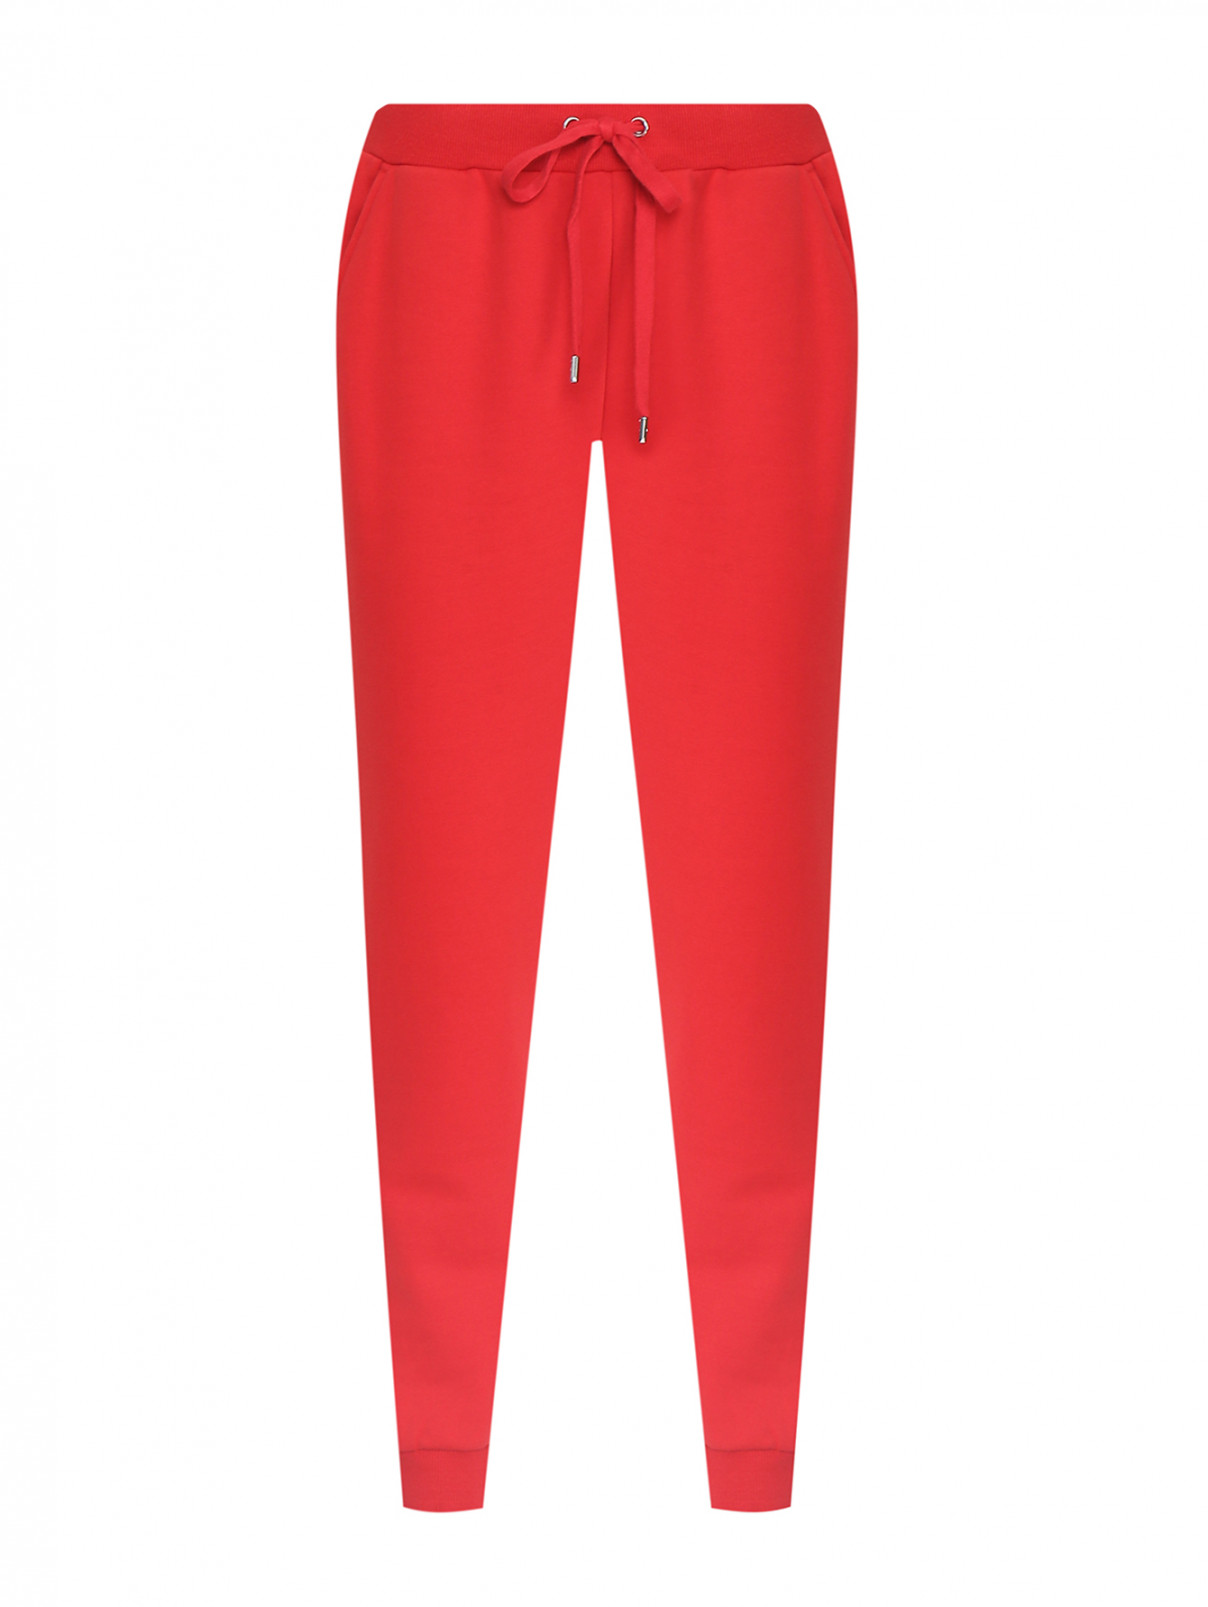 Трикотажные брюки на резинке с карманами Michael by MK  –  Общий вид  – Цвет:  Красный